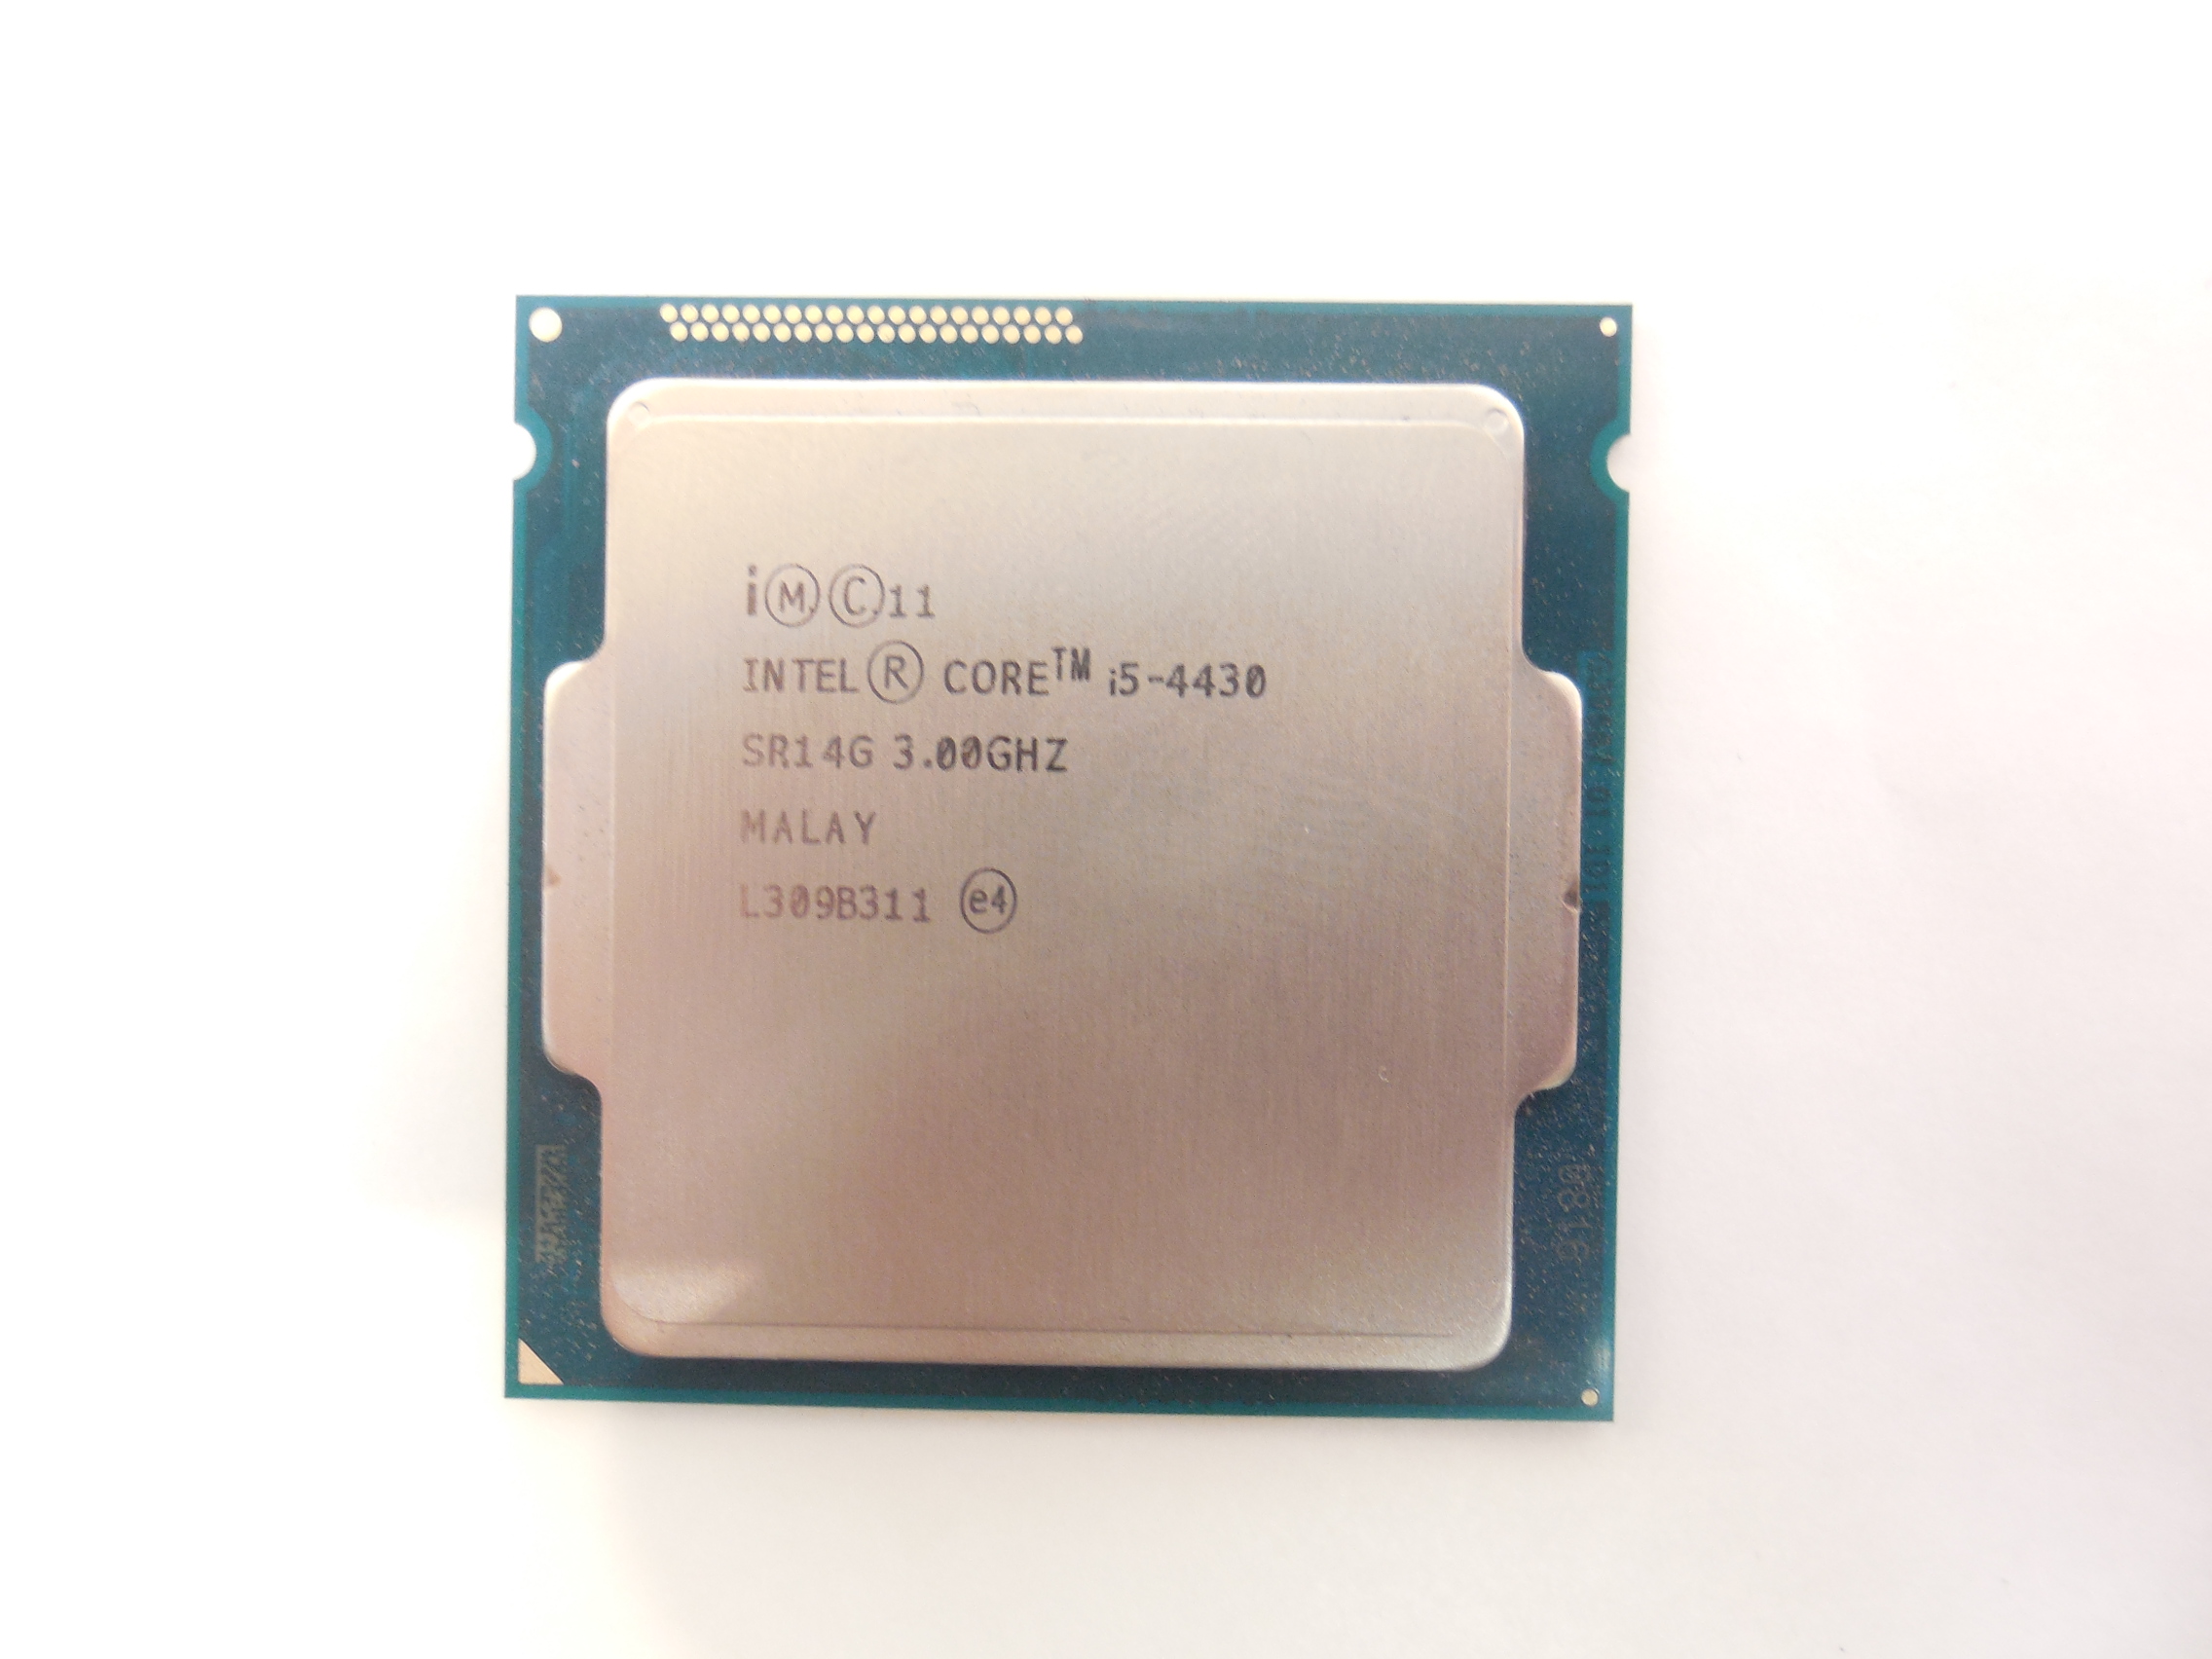 1.3 ггц. Intel(r) Core(TM) i5-4430 CPU @ 3.00GHZ. Intel(r) Core(TM) i5-4430 CPU @ 3.00GHZ 3.00 GHZ. Процессор Intel Core i7-4770 Haswell lga1150, 4 x 3400 МГЦ, OEM. Intel Core i3 — 4430.